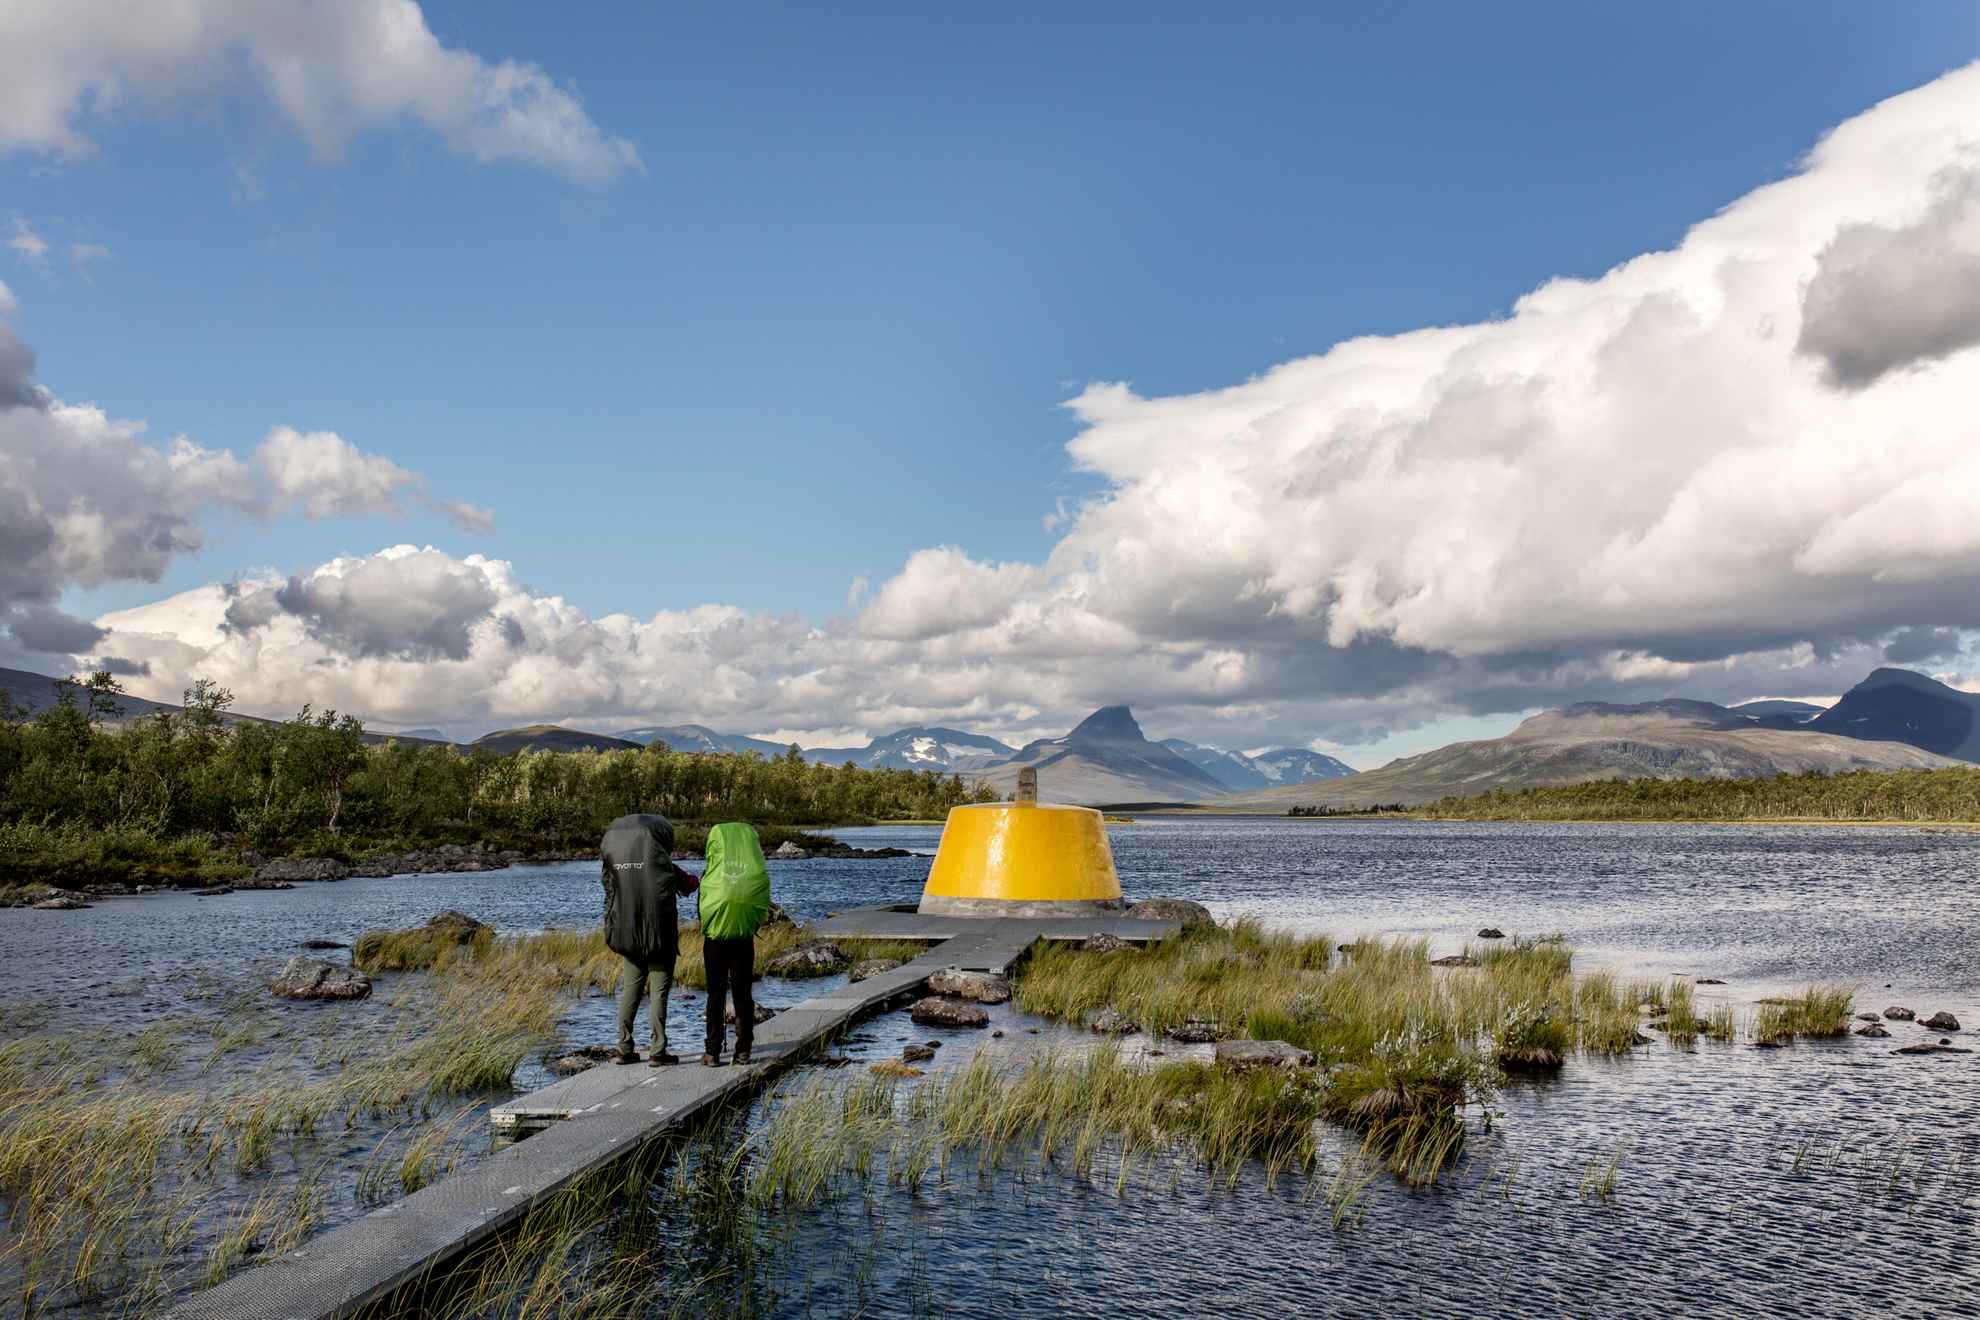 Deux randonneurs avec des sacs à dos regardent un grand cairn en béton dans l'eau avec les montagnes en arrière-plan.